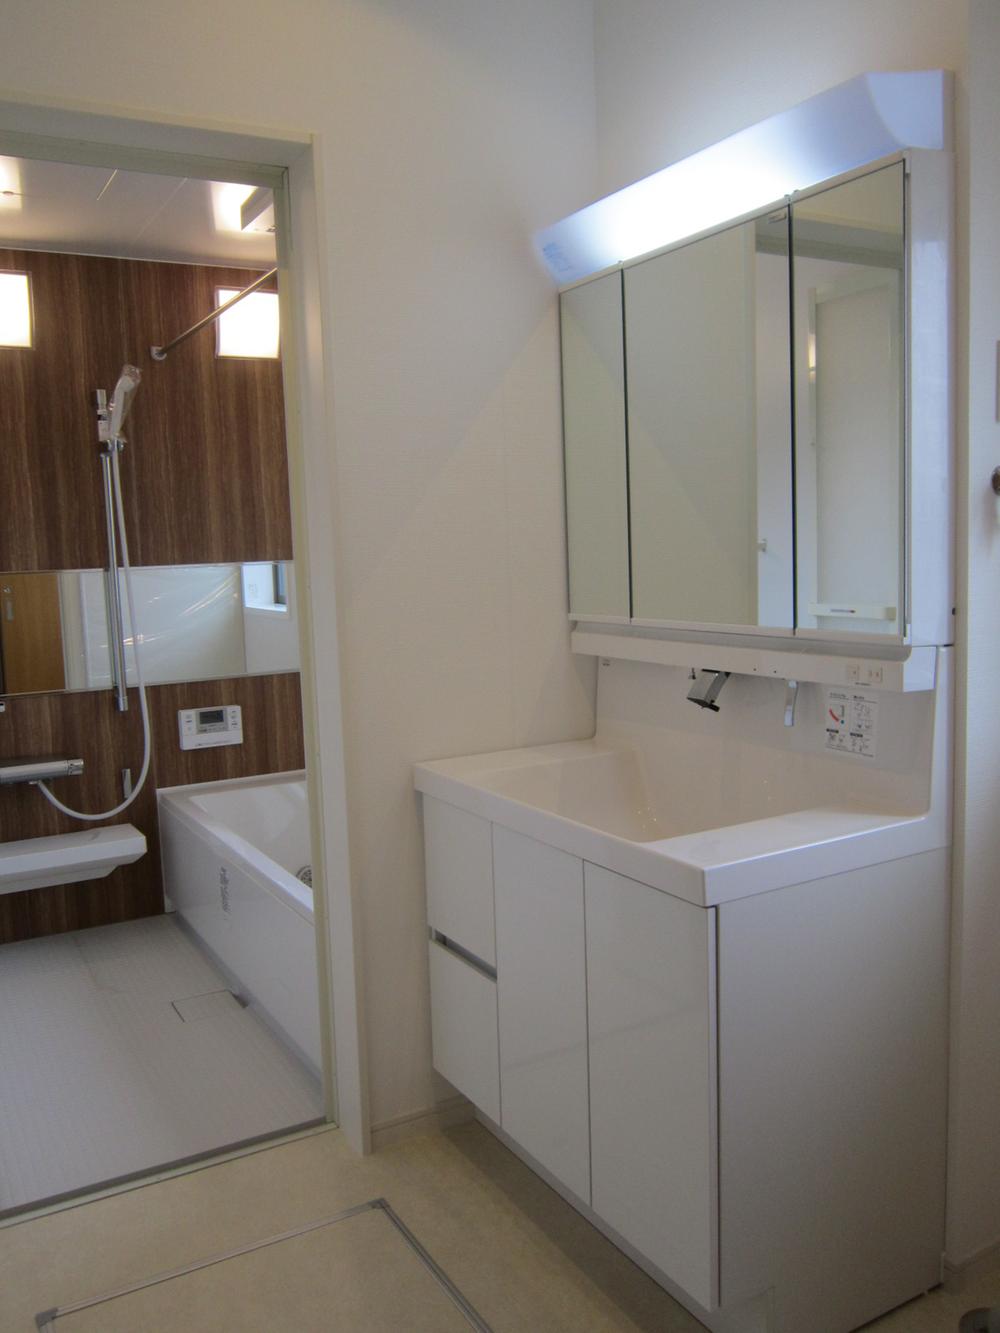 Wash basin, toilet. Indoor shooting Wash basin and bathroom